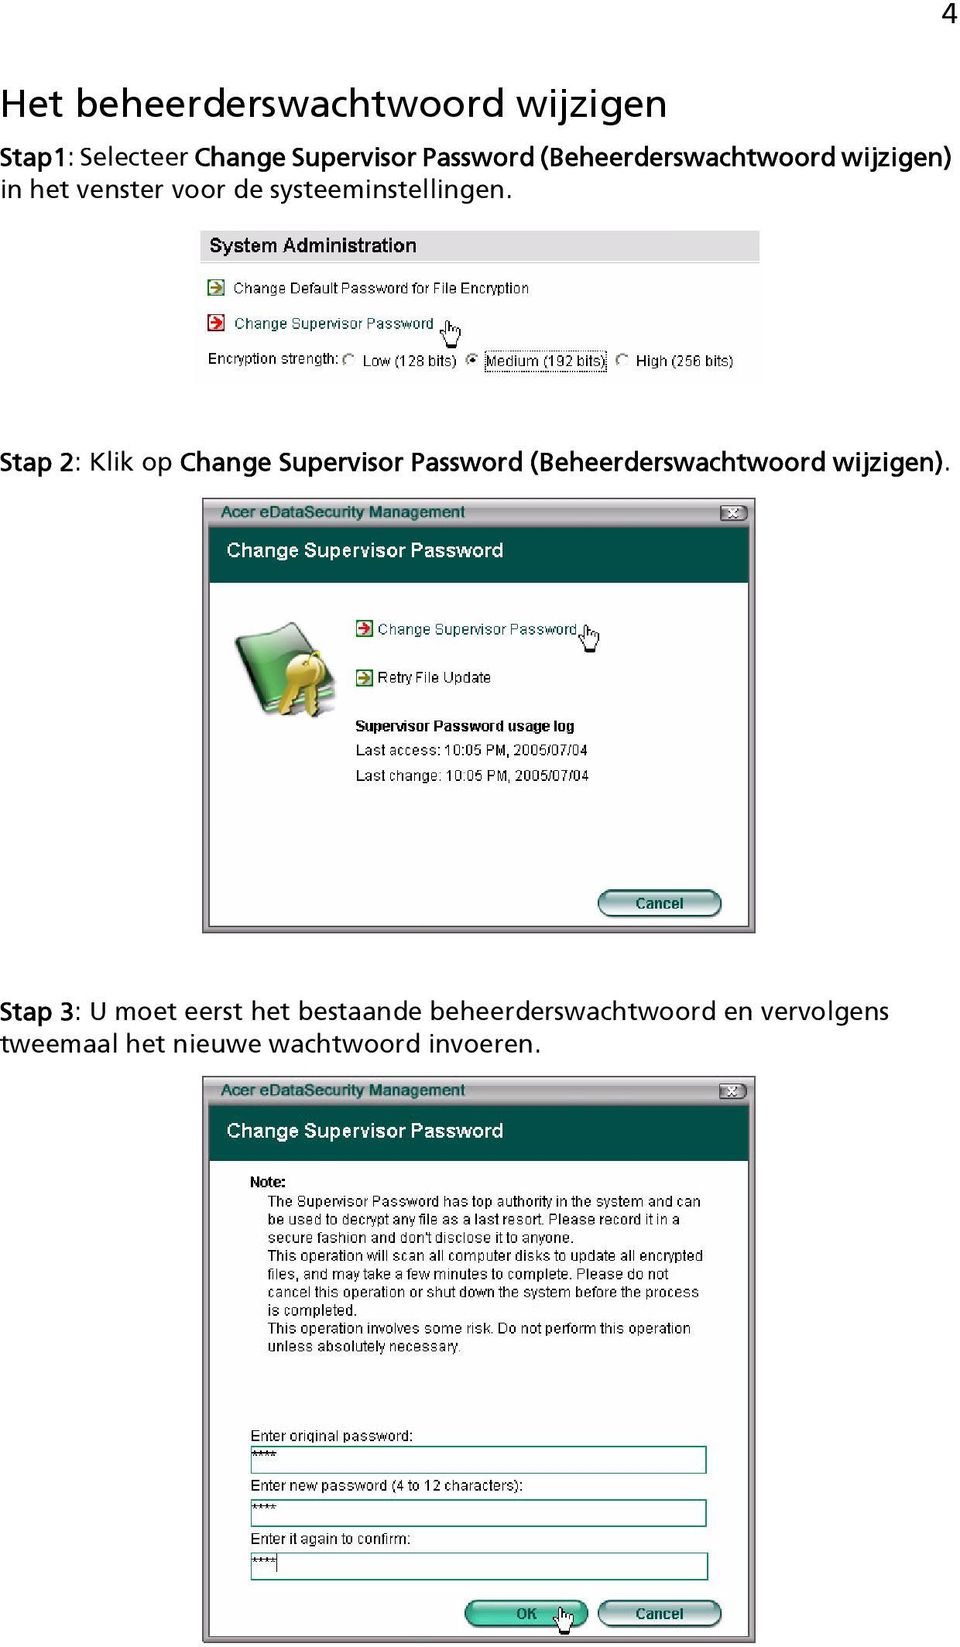 Stap 2: Klik op Change Supervisor Password (Beheerderswachtwoord wijzigen).